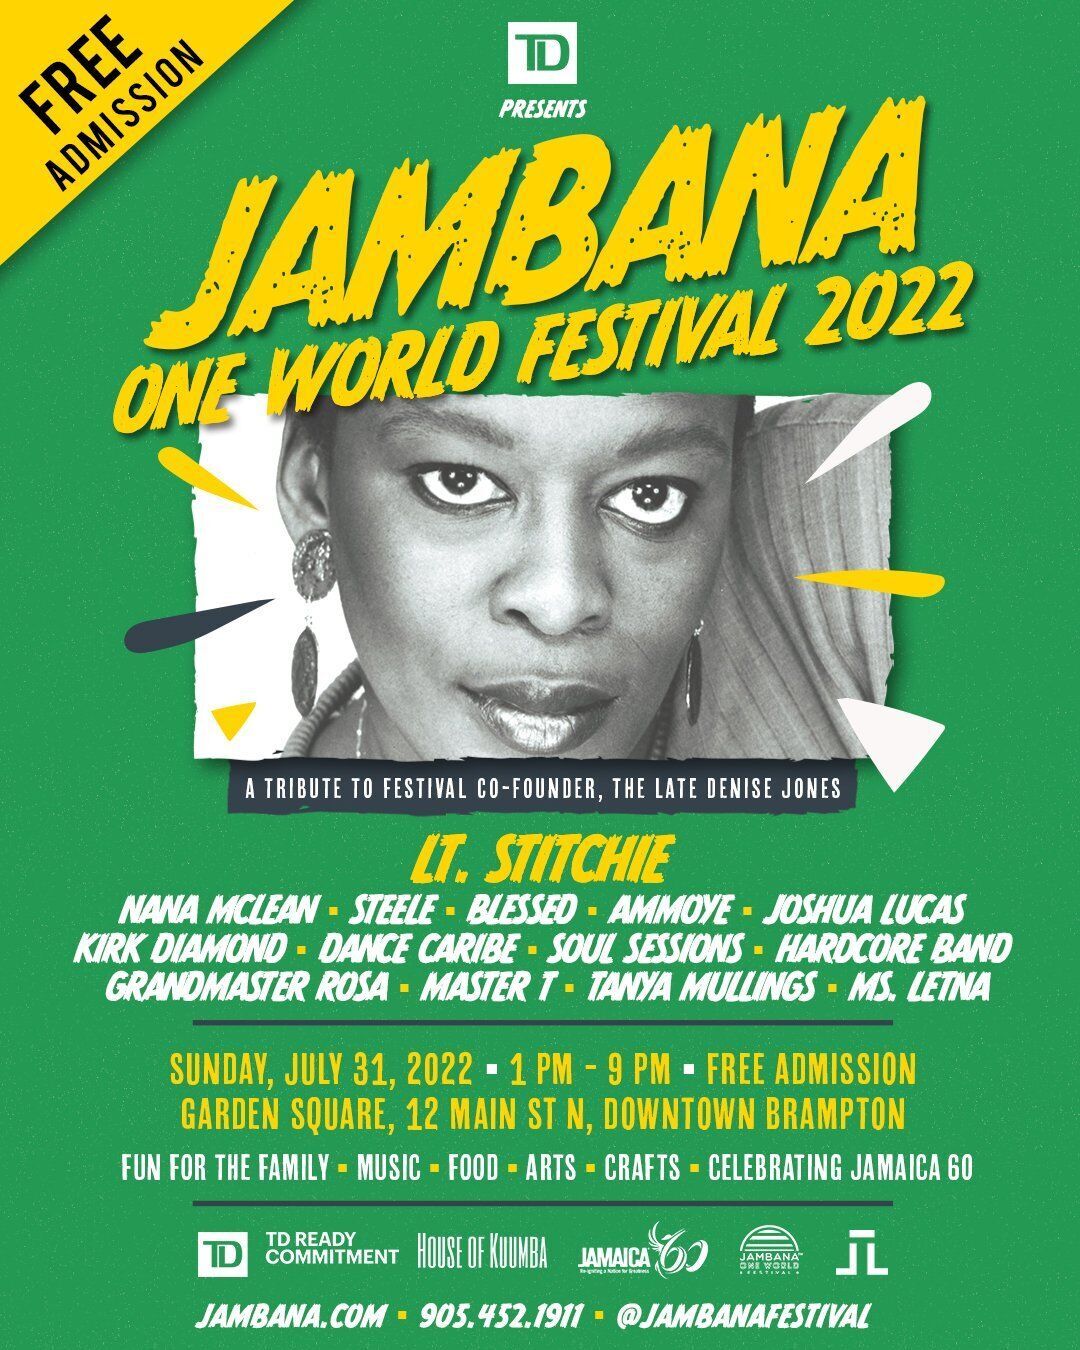 Jambana One World Festival returning to Brampton this summer